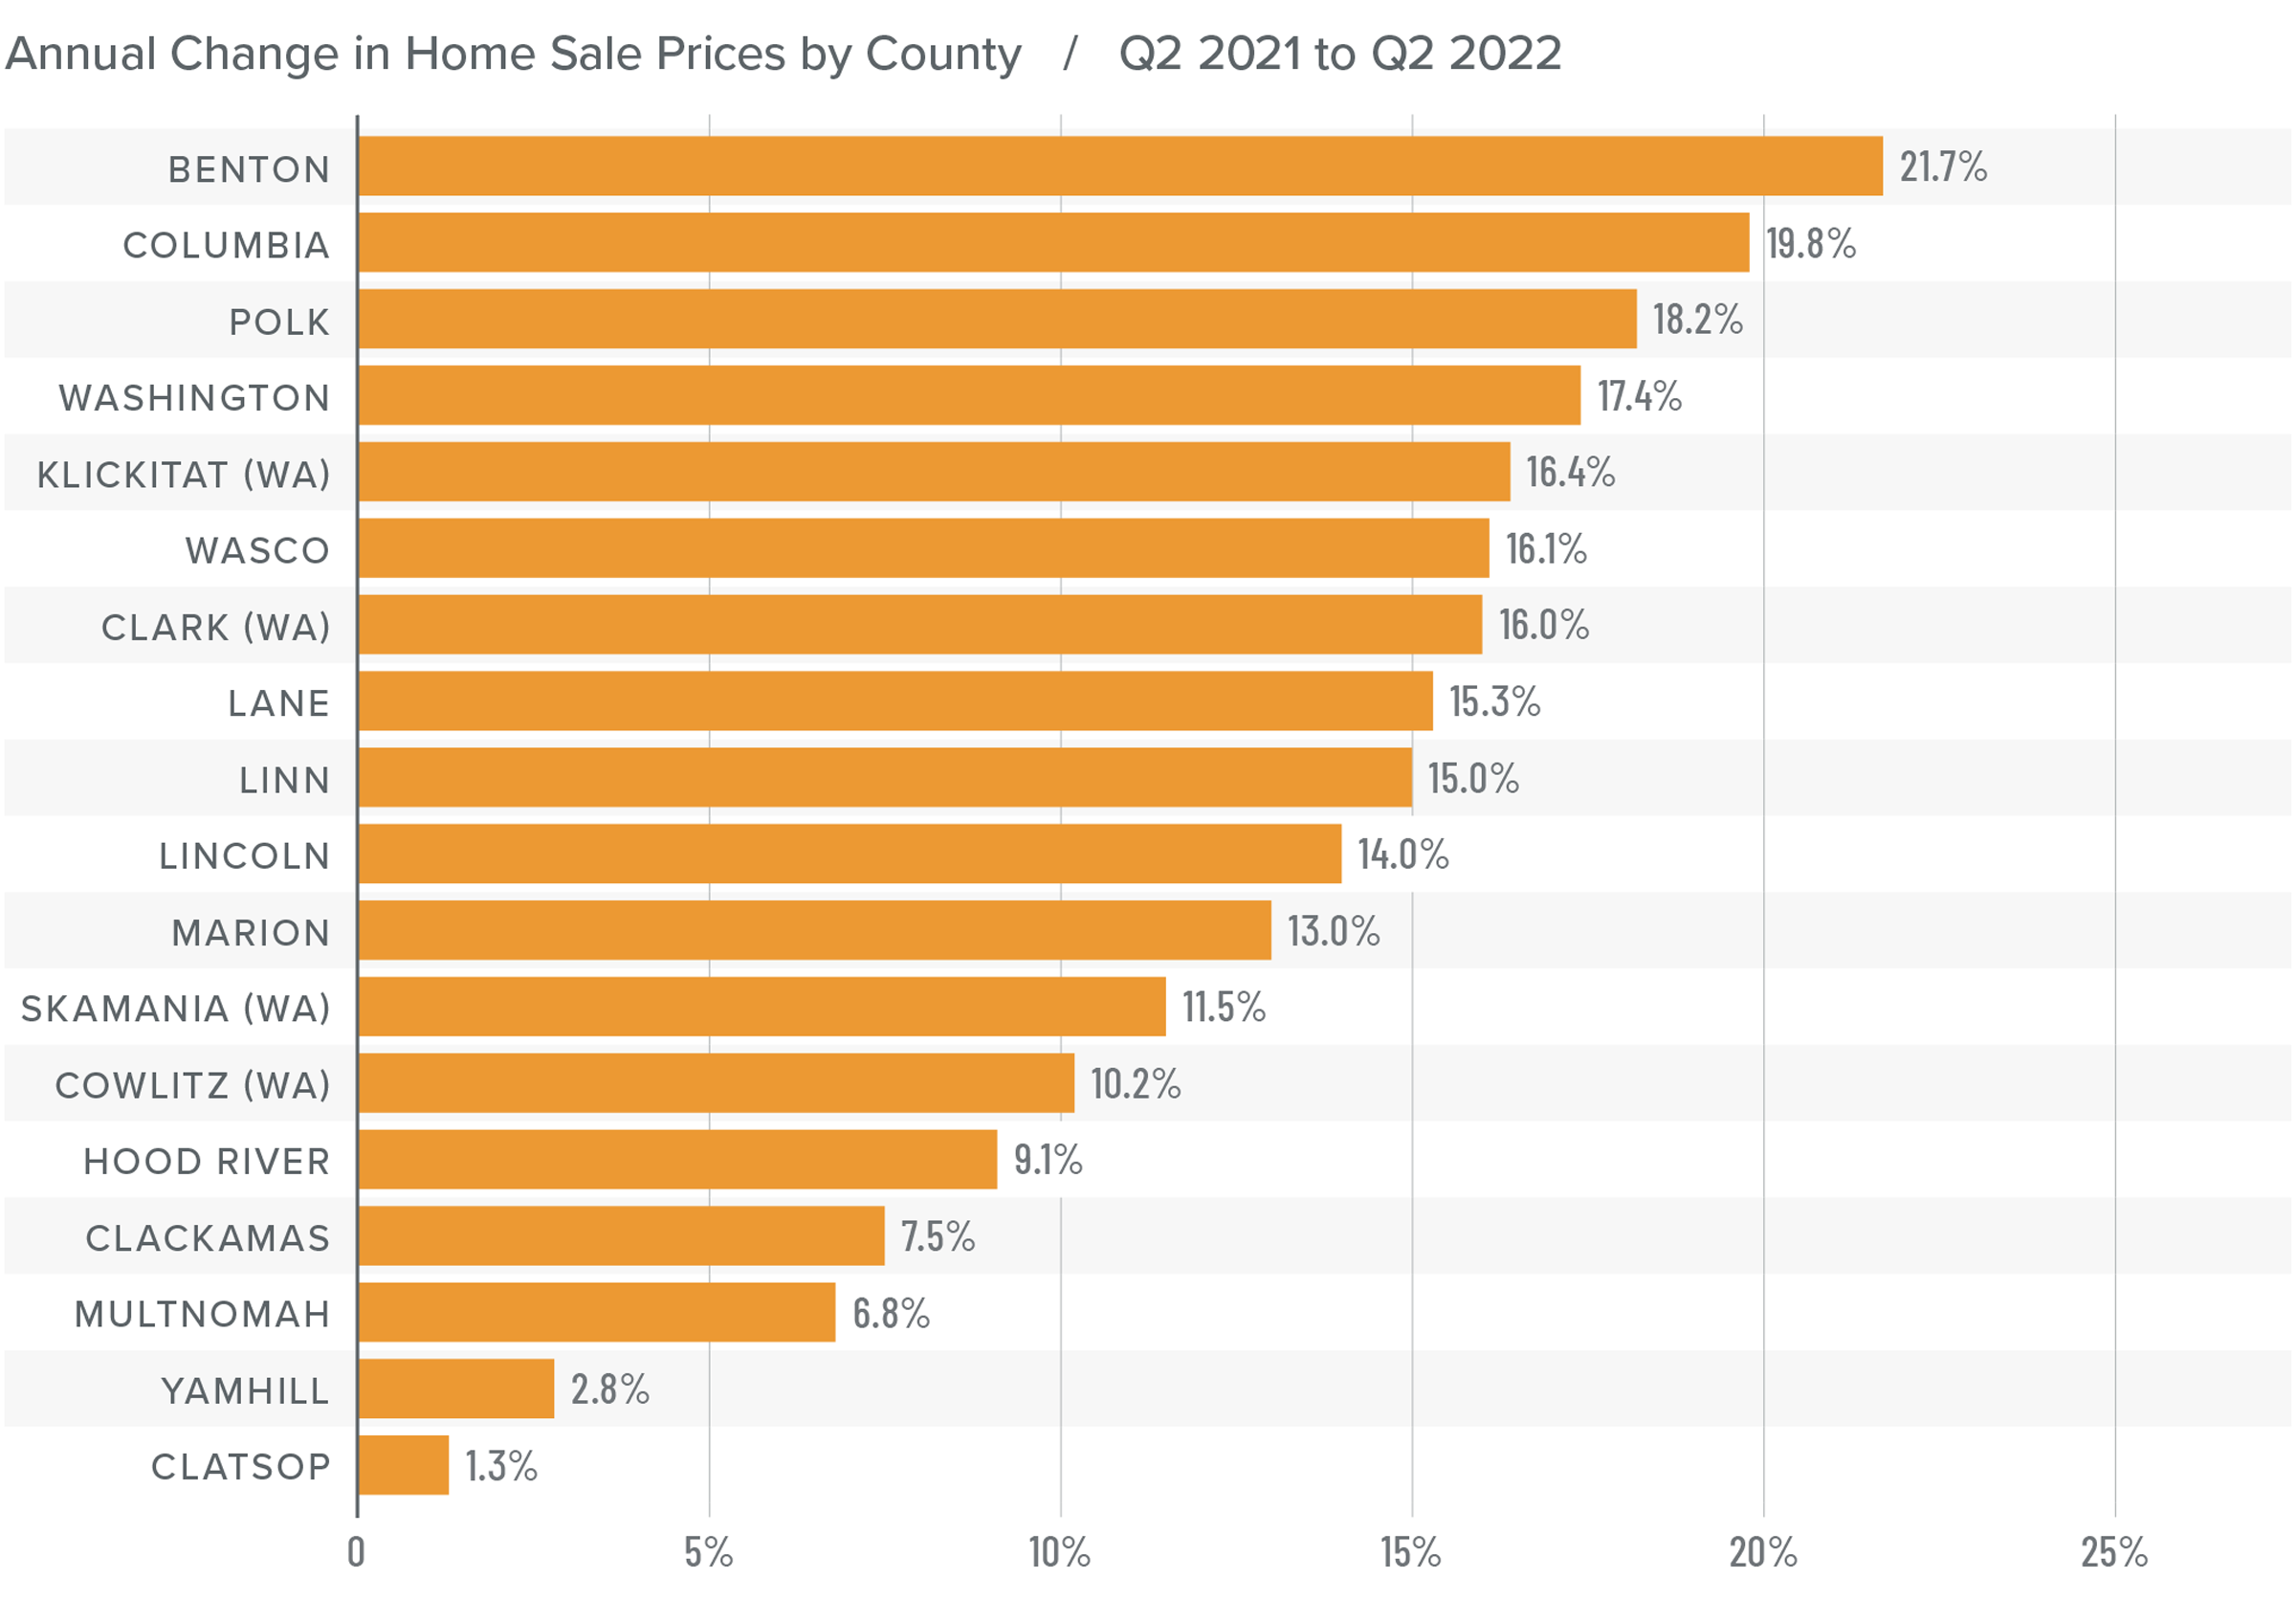 A bar graph showing the annual change in home sale prices for various counties in Northwest Oregon and Southwest Washington from Q2 2021 to Q2 2022. Benton county tops the list at 21.7%, followed by Columbia at 19.8%, Polk at 18.2%, Washington at 17.4%, Klickitat (WA) at 16.4%, Wasco at 16.1%, Clark (WA) at 16%, Lane at 15.3%, Linn at 15%, Lincoln at 14%, Marion at 13%, Skamania (WA) at 11.5%, Cowlitz (WA) at 10.2%, Hood River at 9.1%, Clackamas at 7.5%, Multnomah at 6.8%, Yamhill at 2.8%, and finally Clatsop at 1.3%.